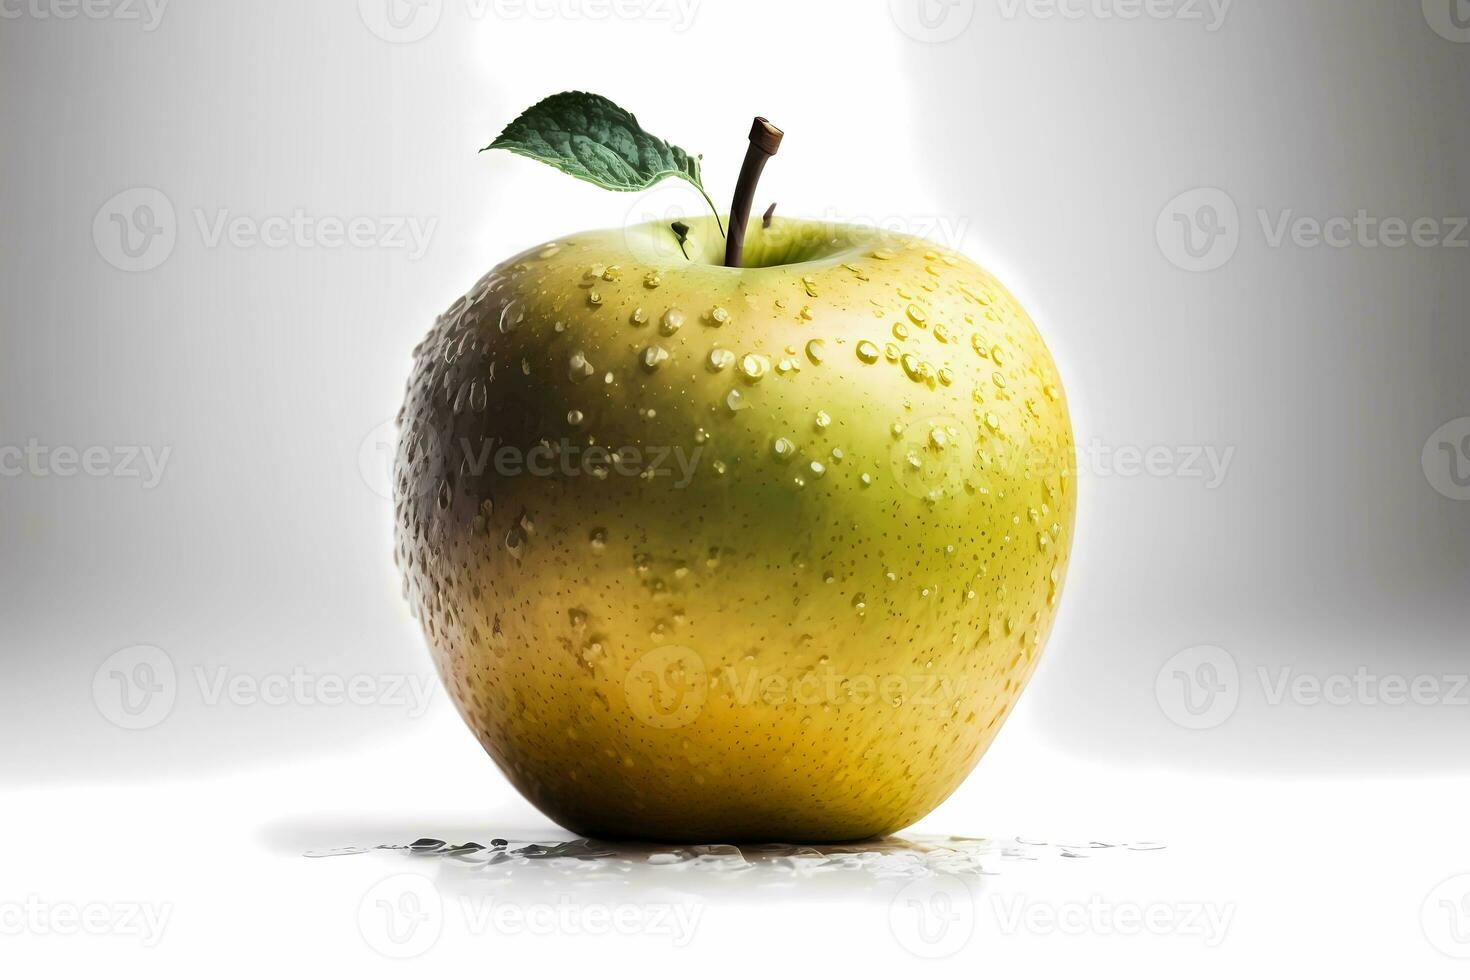 amarelo fresco maçã, isolado foto